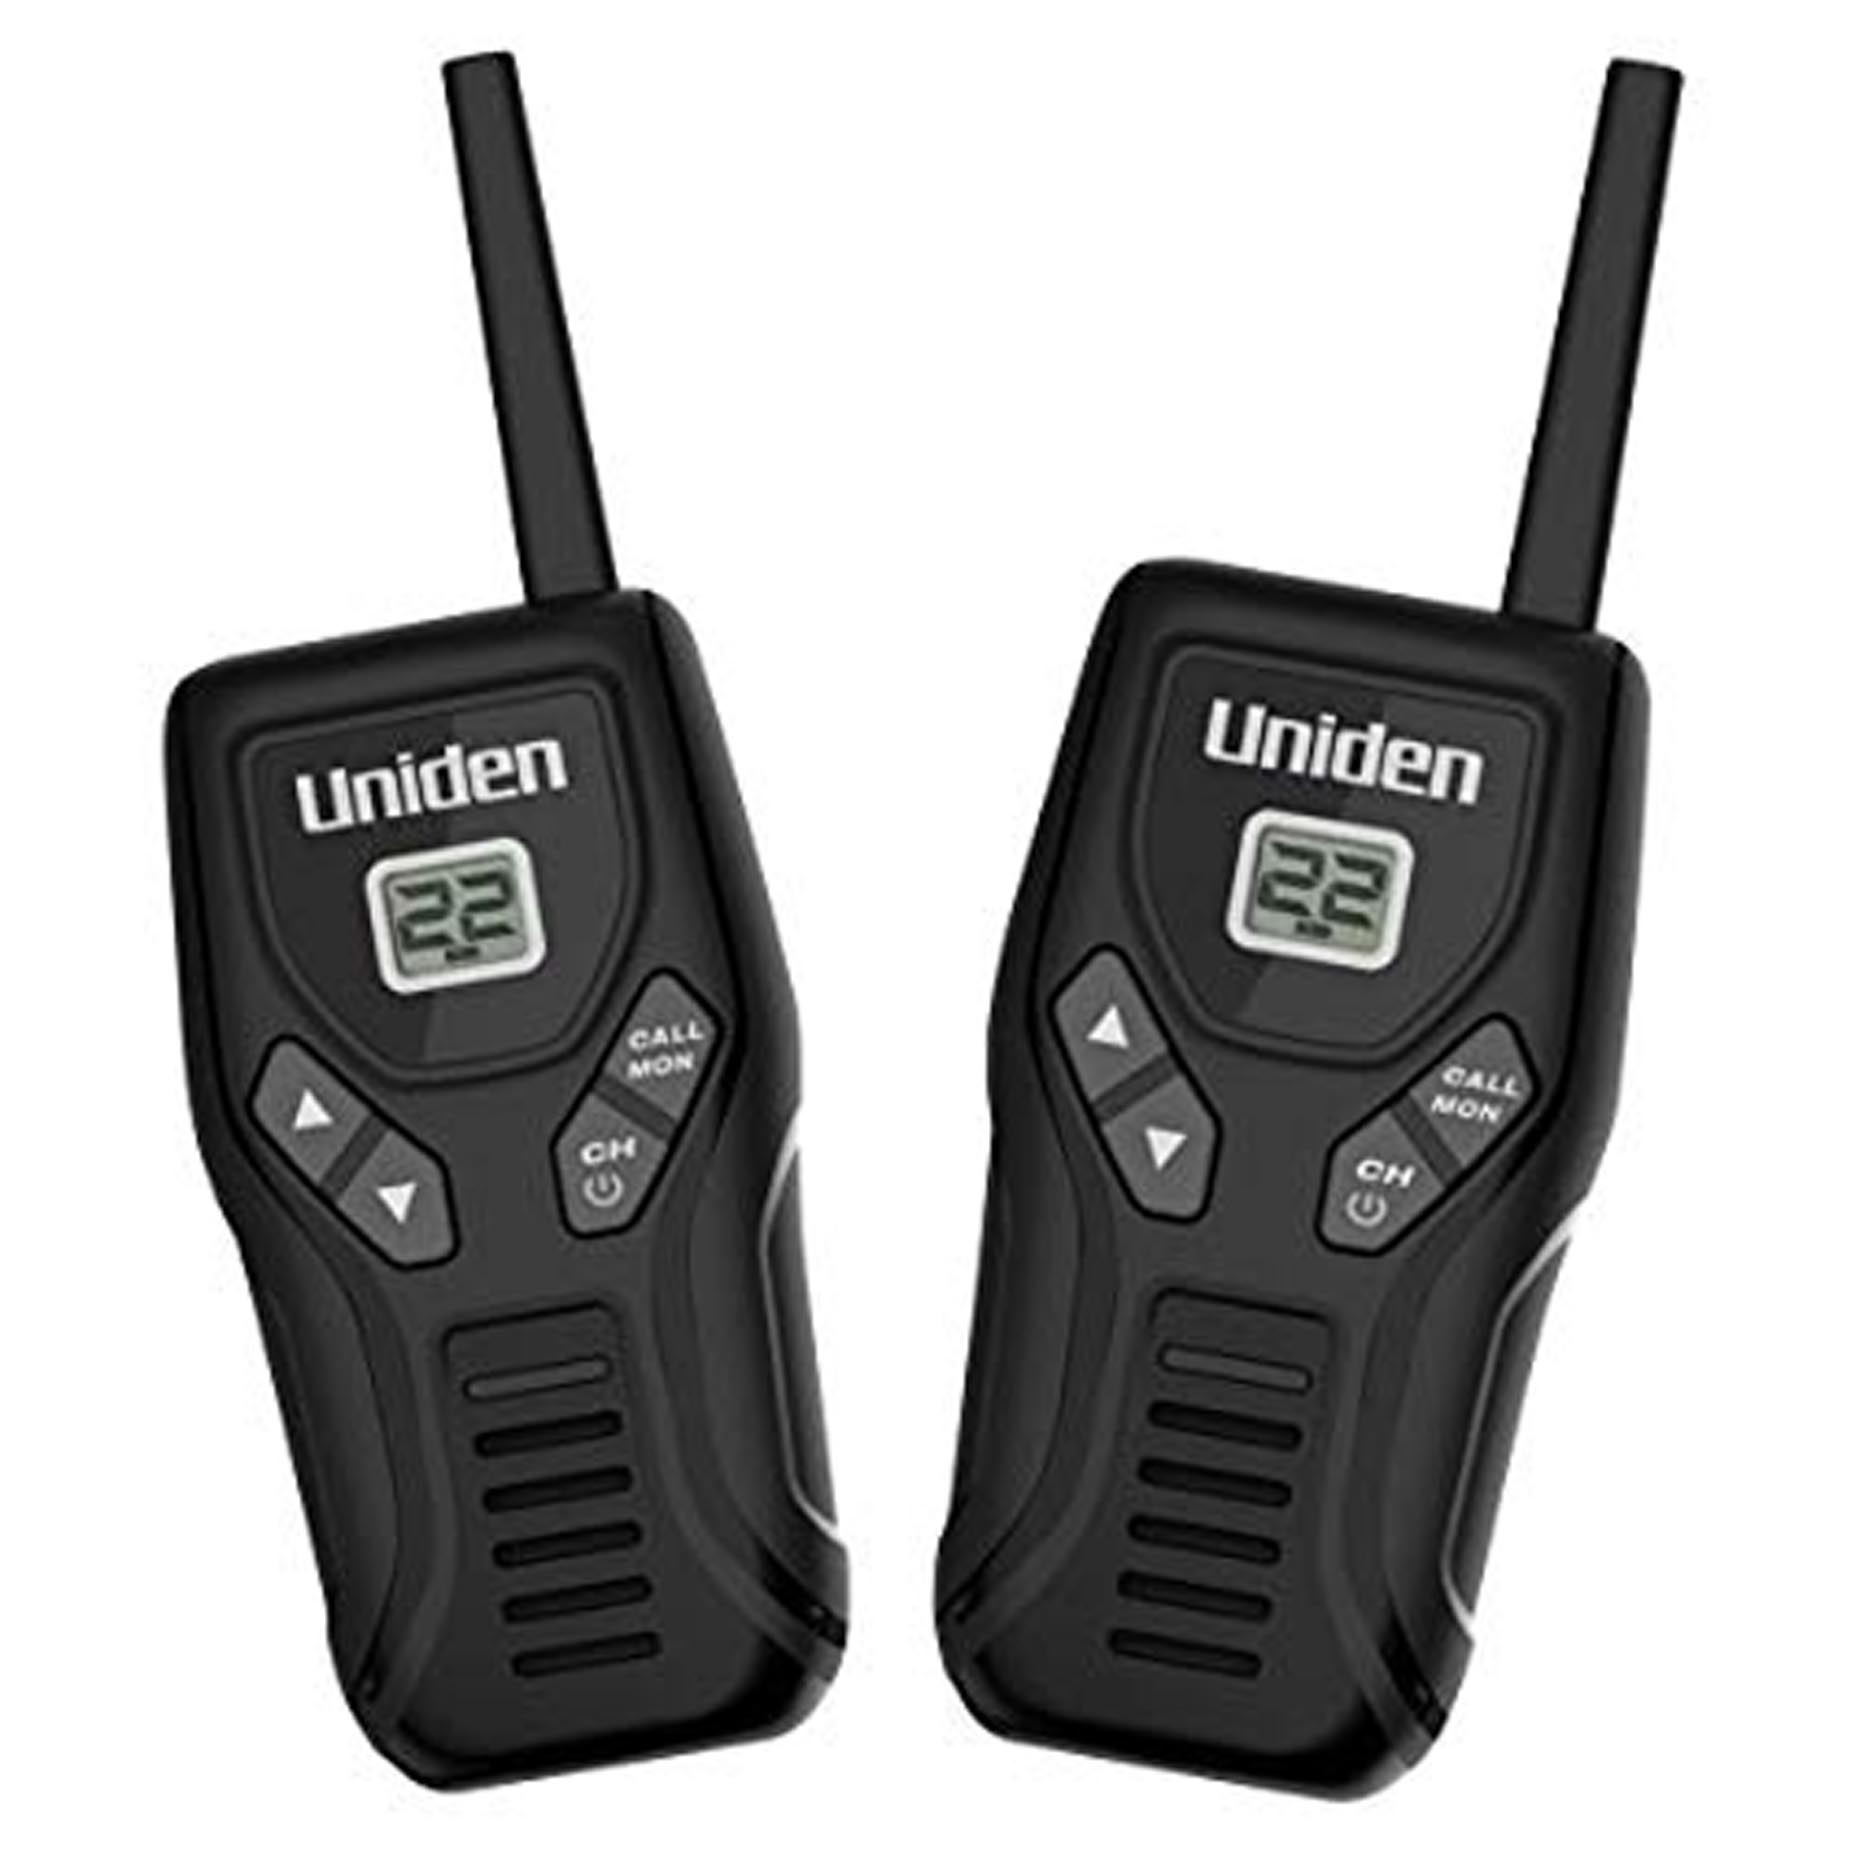 Harga Jual Uniden GMR2050-2C Handy Talky